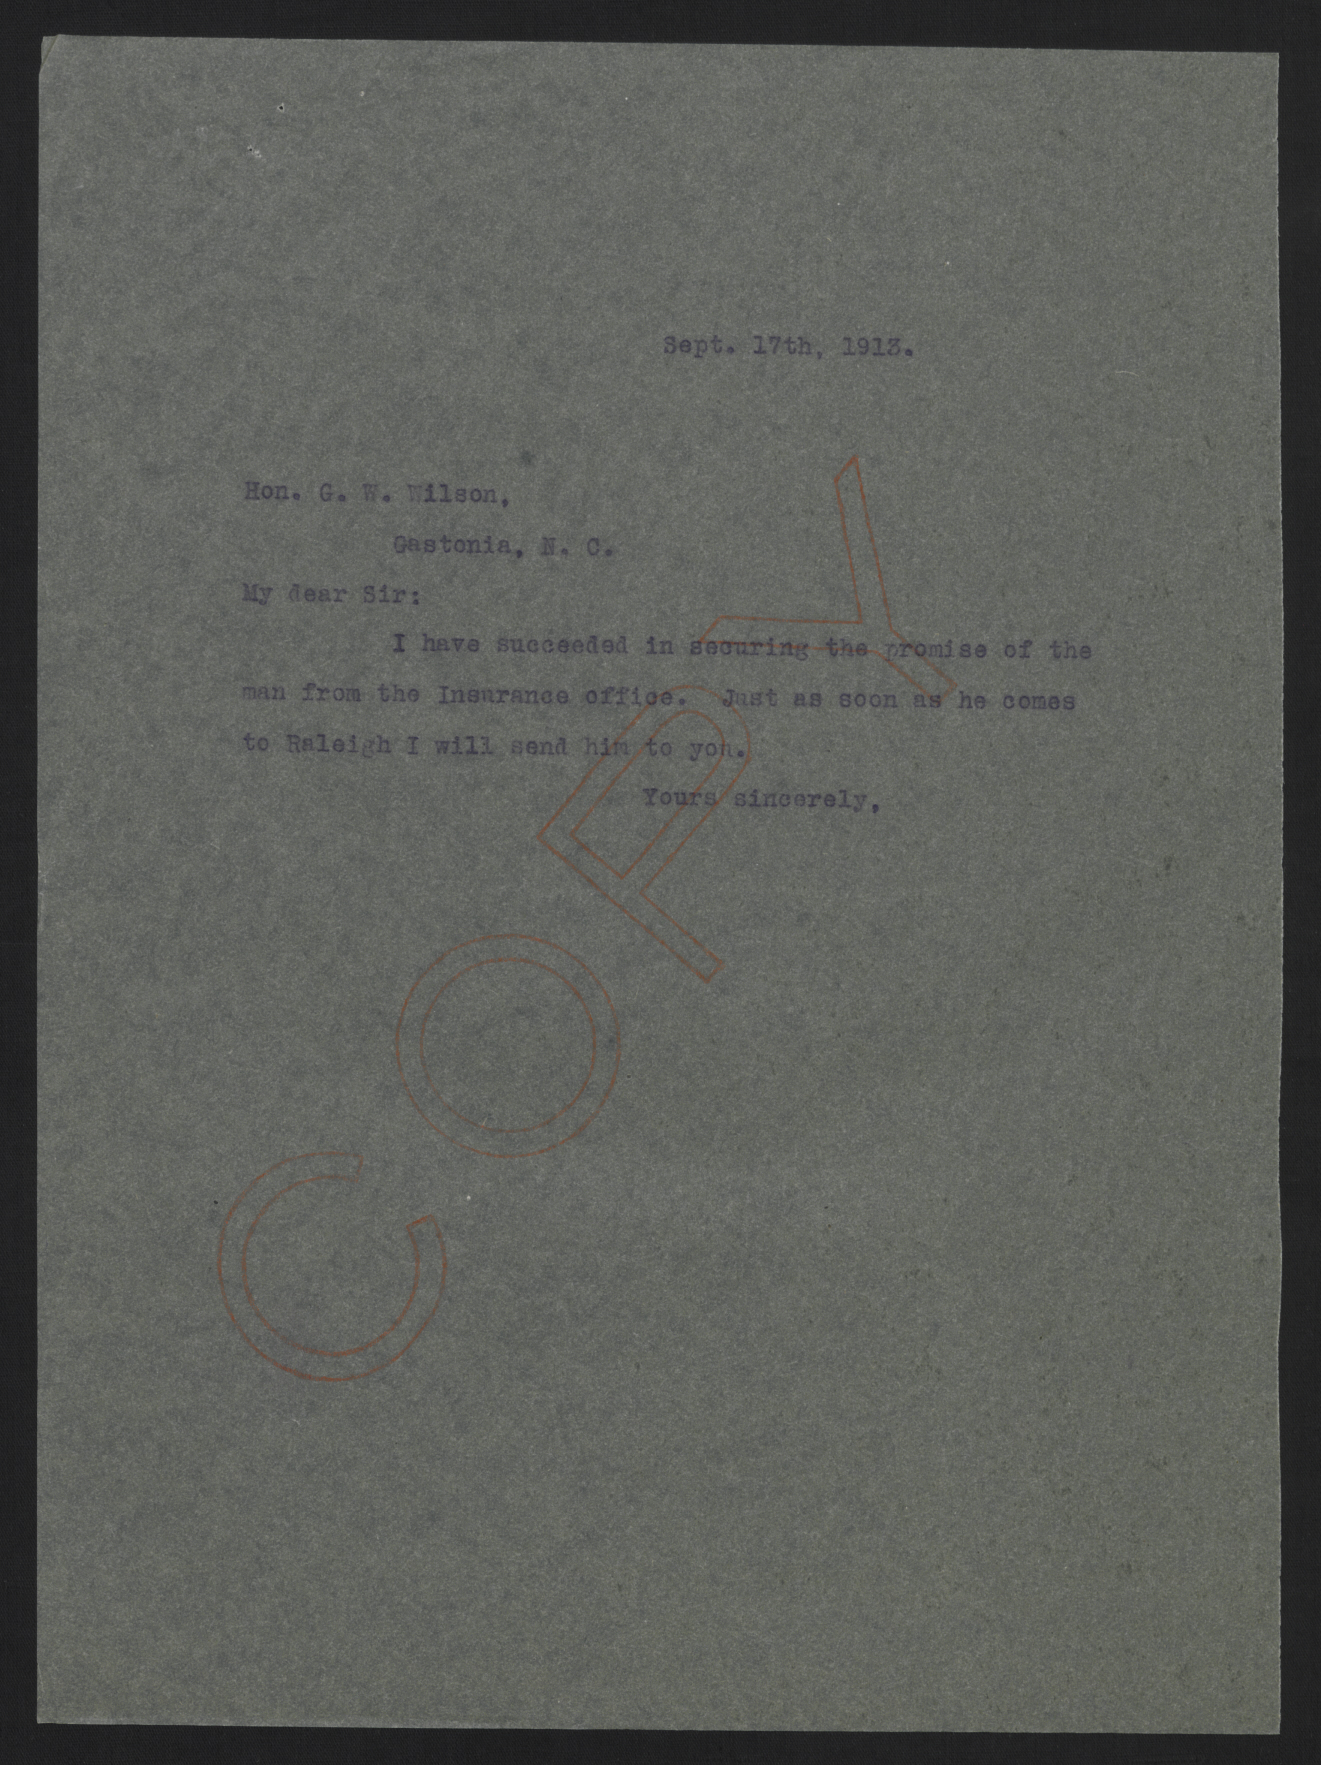 Letter from Craig to Wilson, September 17, 1913